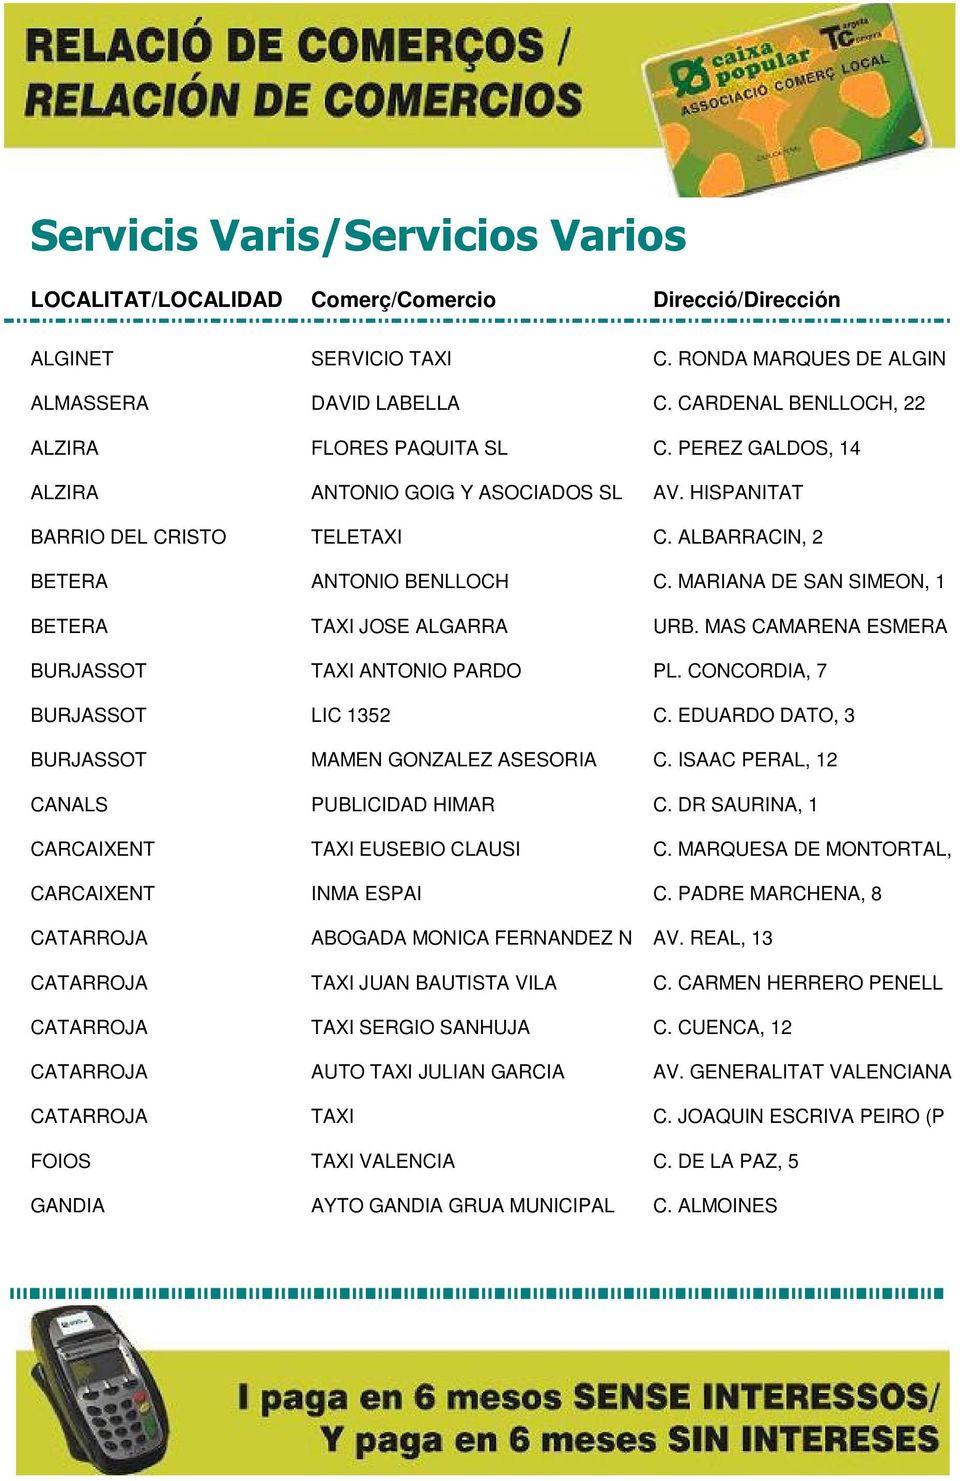 CONCORDIA, 7 BURJASSOT LIC 1352 C. EDUARDO DATO, 3 BURJASSOT MAMEN GONZALEZ ASESORIA C. ISAAC PERAL, 12 CANALS PUBLICIDAD HIMAR C. DR SAURINA, 1 CARCAIXENT TAXI EUSEBIO CLAUSI C.